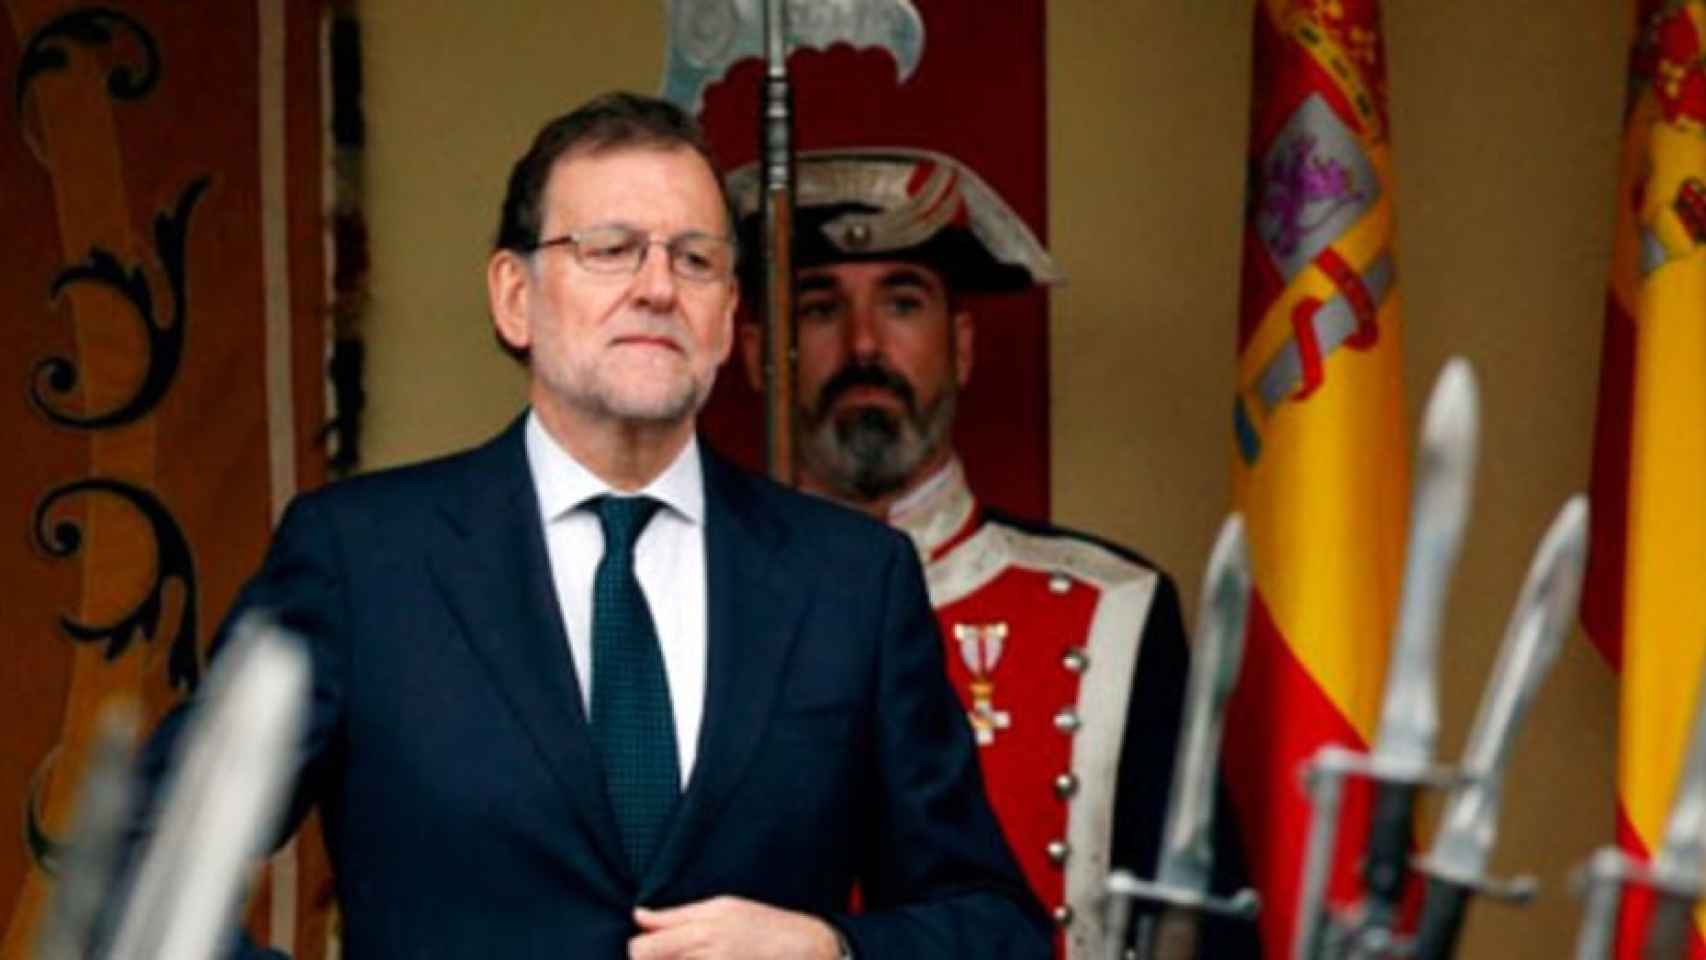 Rajoy relevará a De Guindos la semana que viene y no hará más cambios